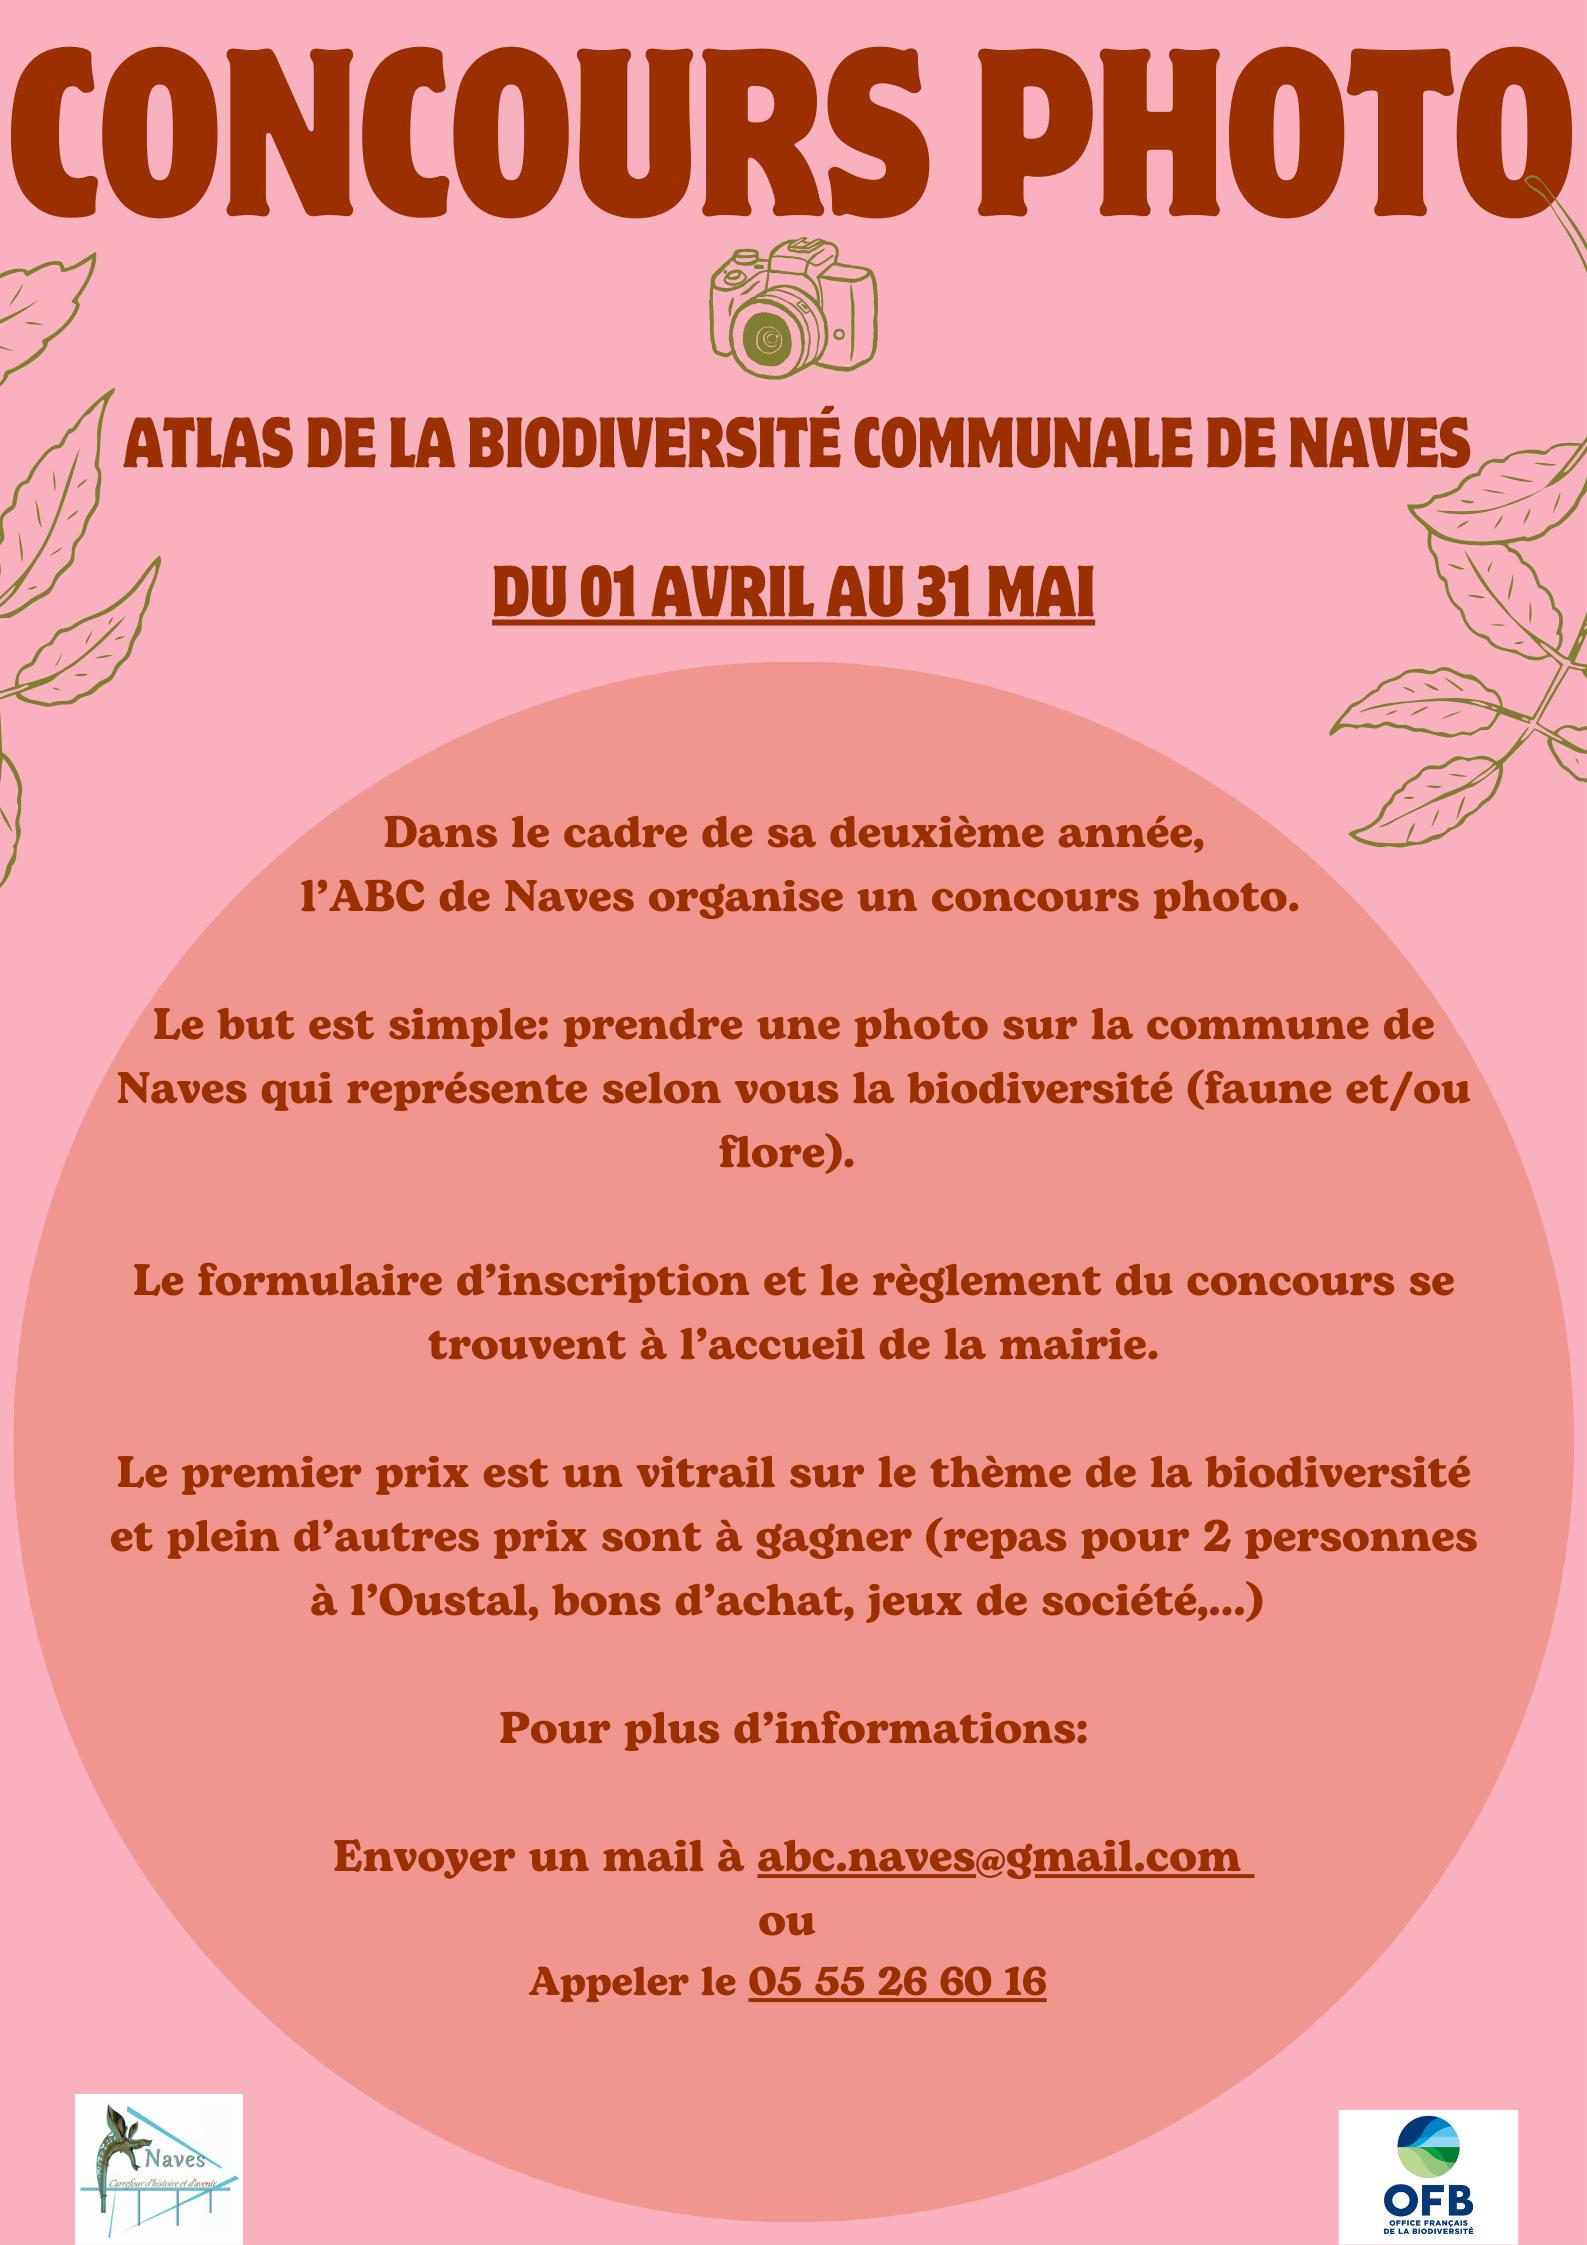 Concours photo de l’Atlas de la Biodiversité communale de Naves - 1